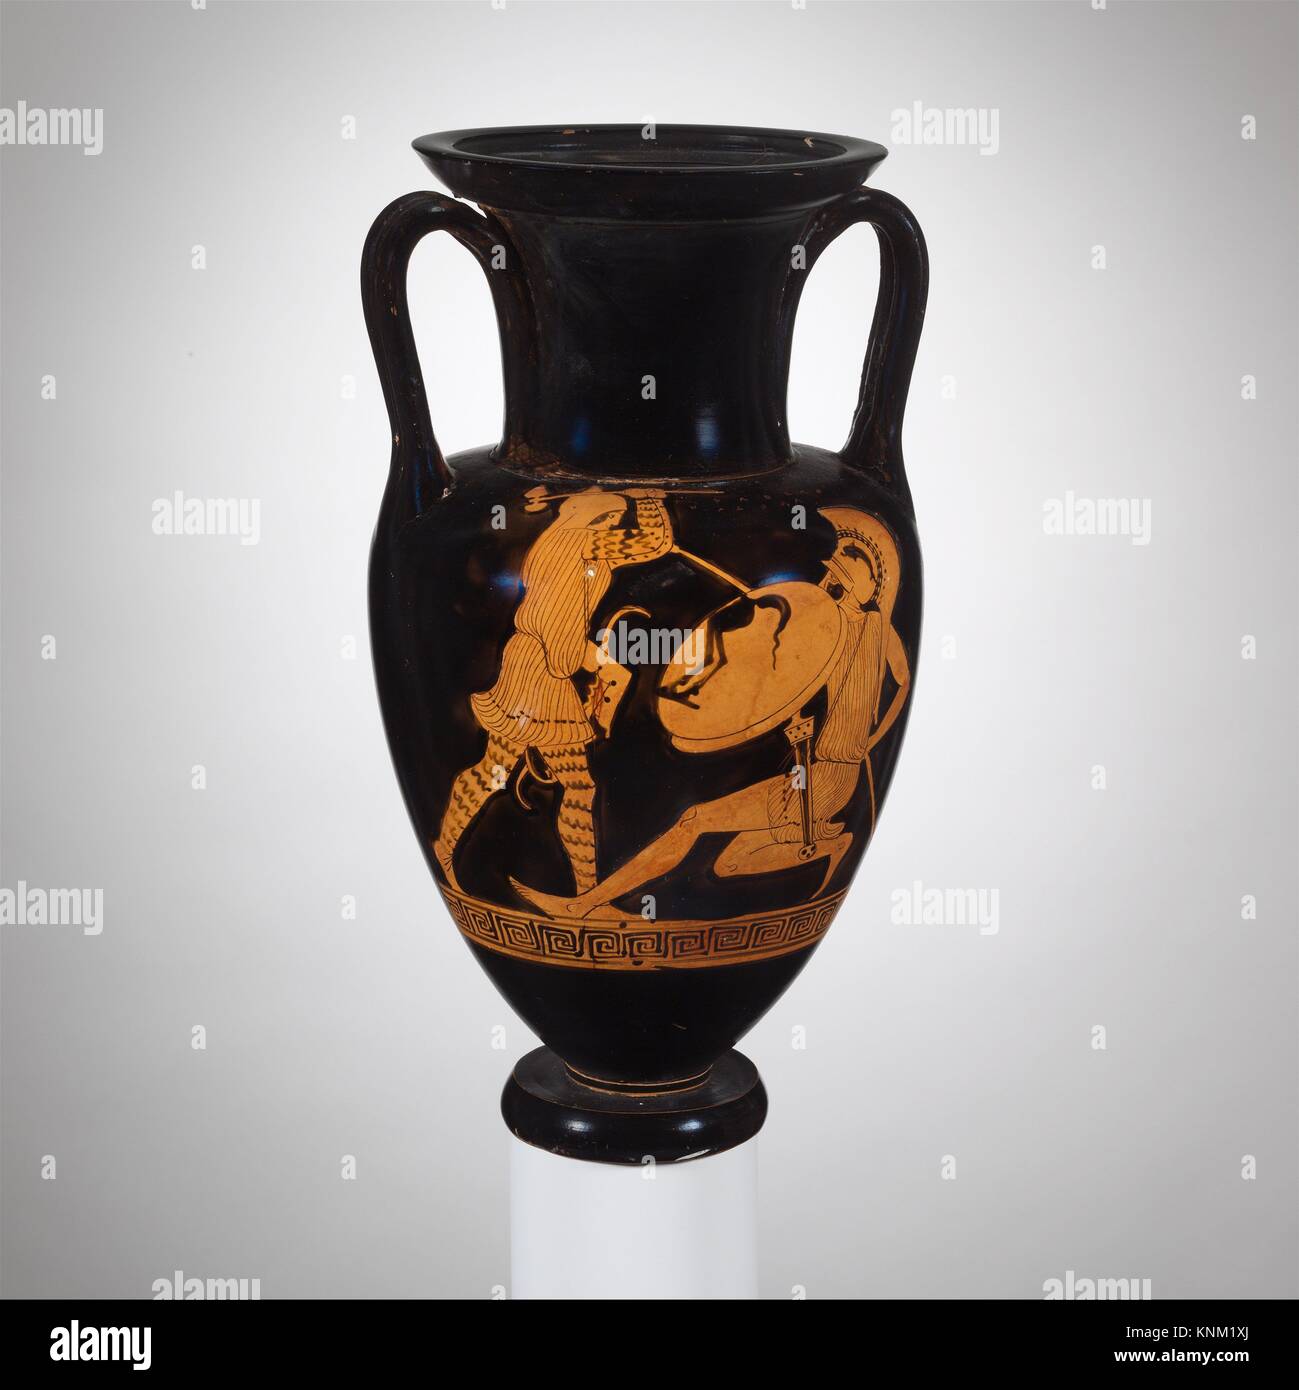 Nolan en terre cuite cou-amphora (jar). Culture : le grec, le grenier.  Dimensions : H. 13 in. (33 cm) ; diamètre de bouche 5 15/16 in. (15,1 cm) ;  diamètre de pied